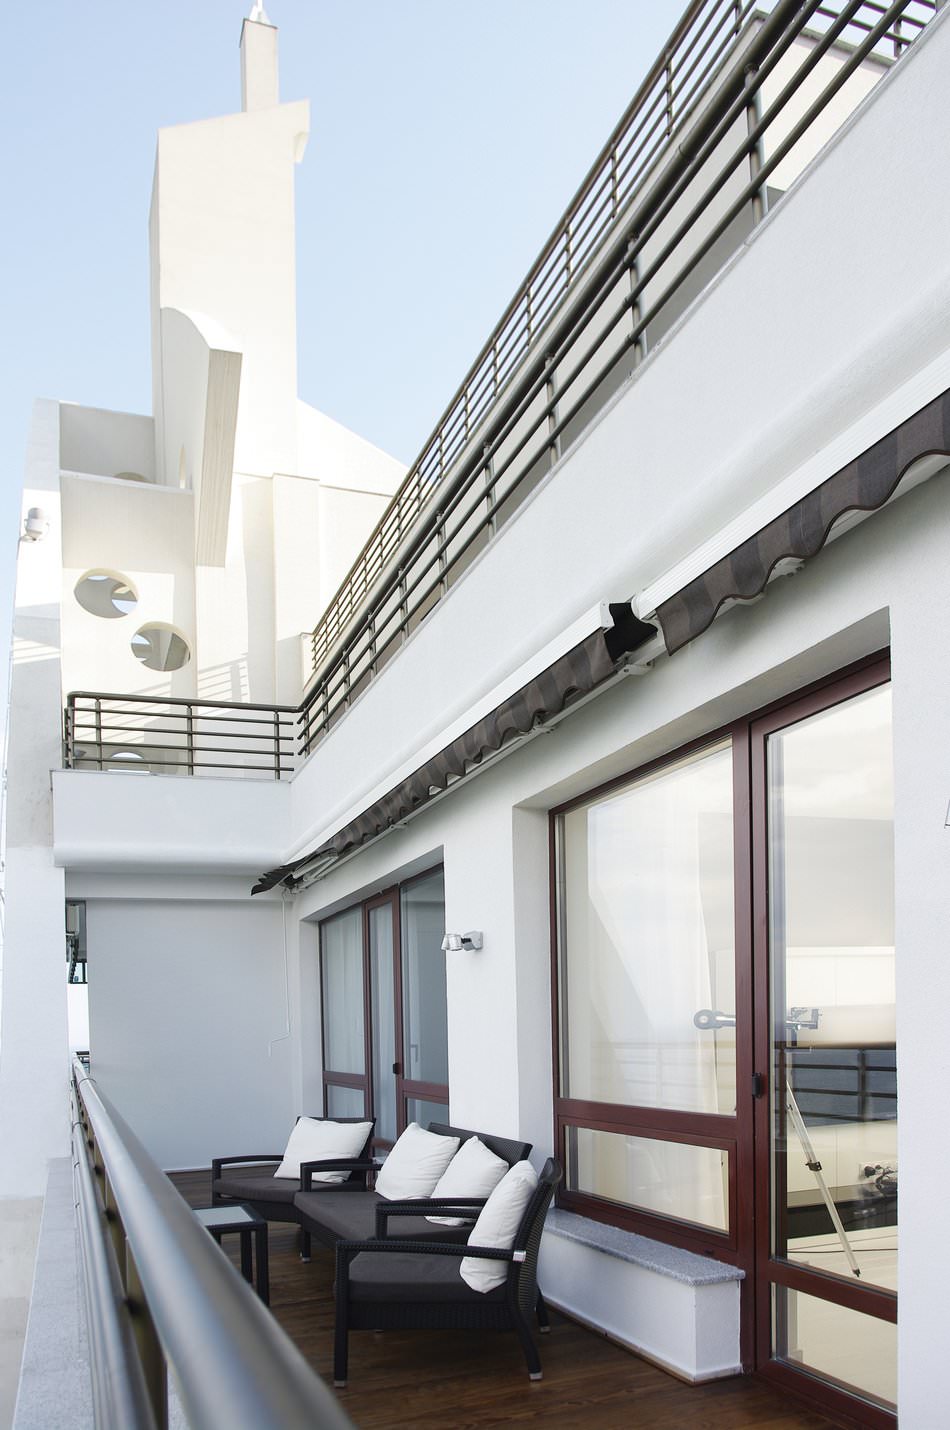 Модерен интериорен дизайн на апартамент в стила на минимализма